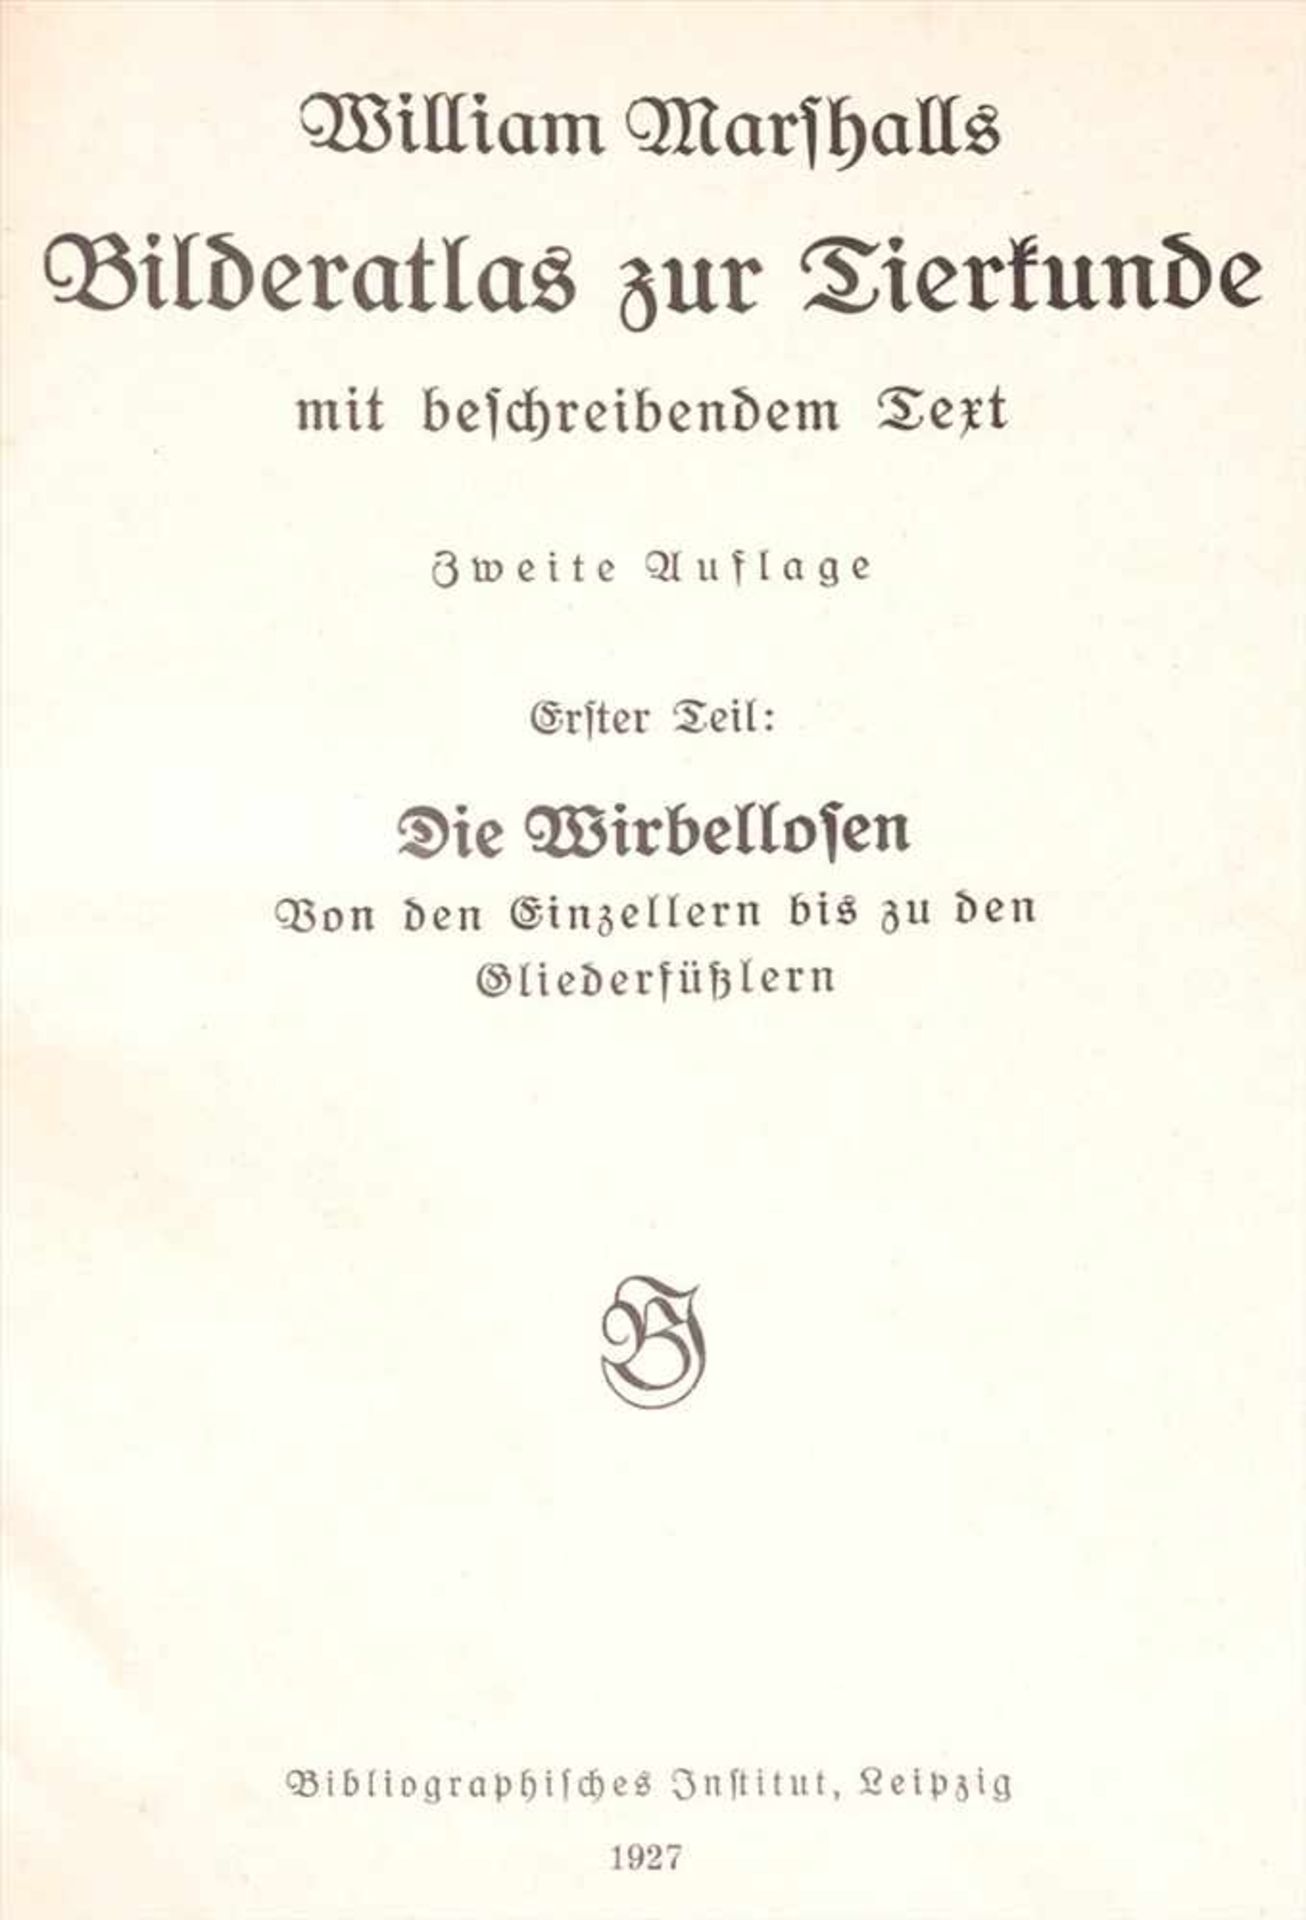 Marshall, William: Bilderatlas zur TierkundeZweite Auflage, Bibliographisches Institut, Leipzig, - Image 4 of 4